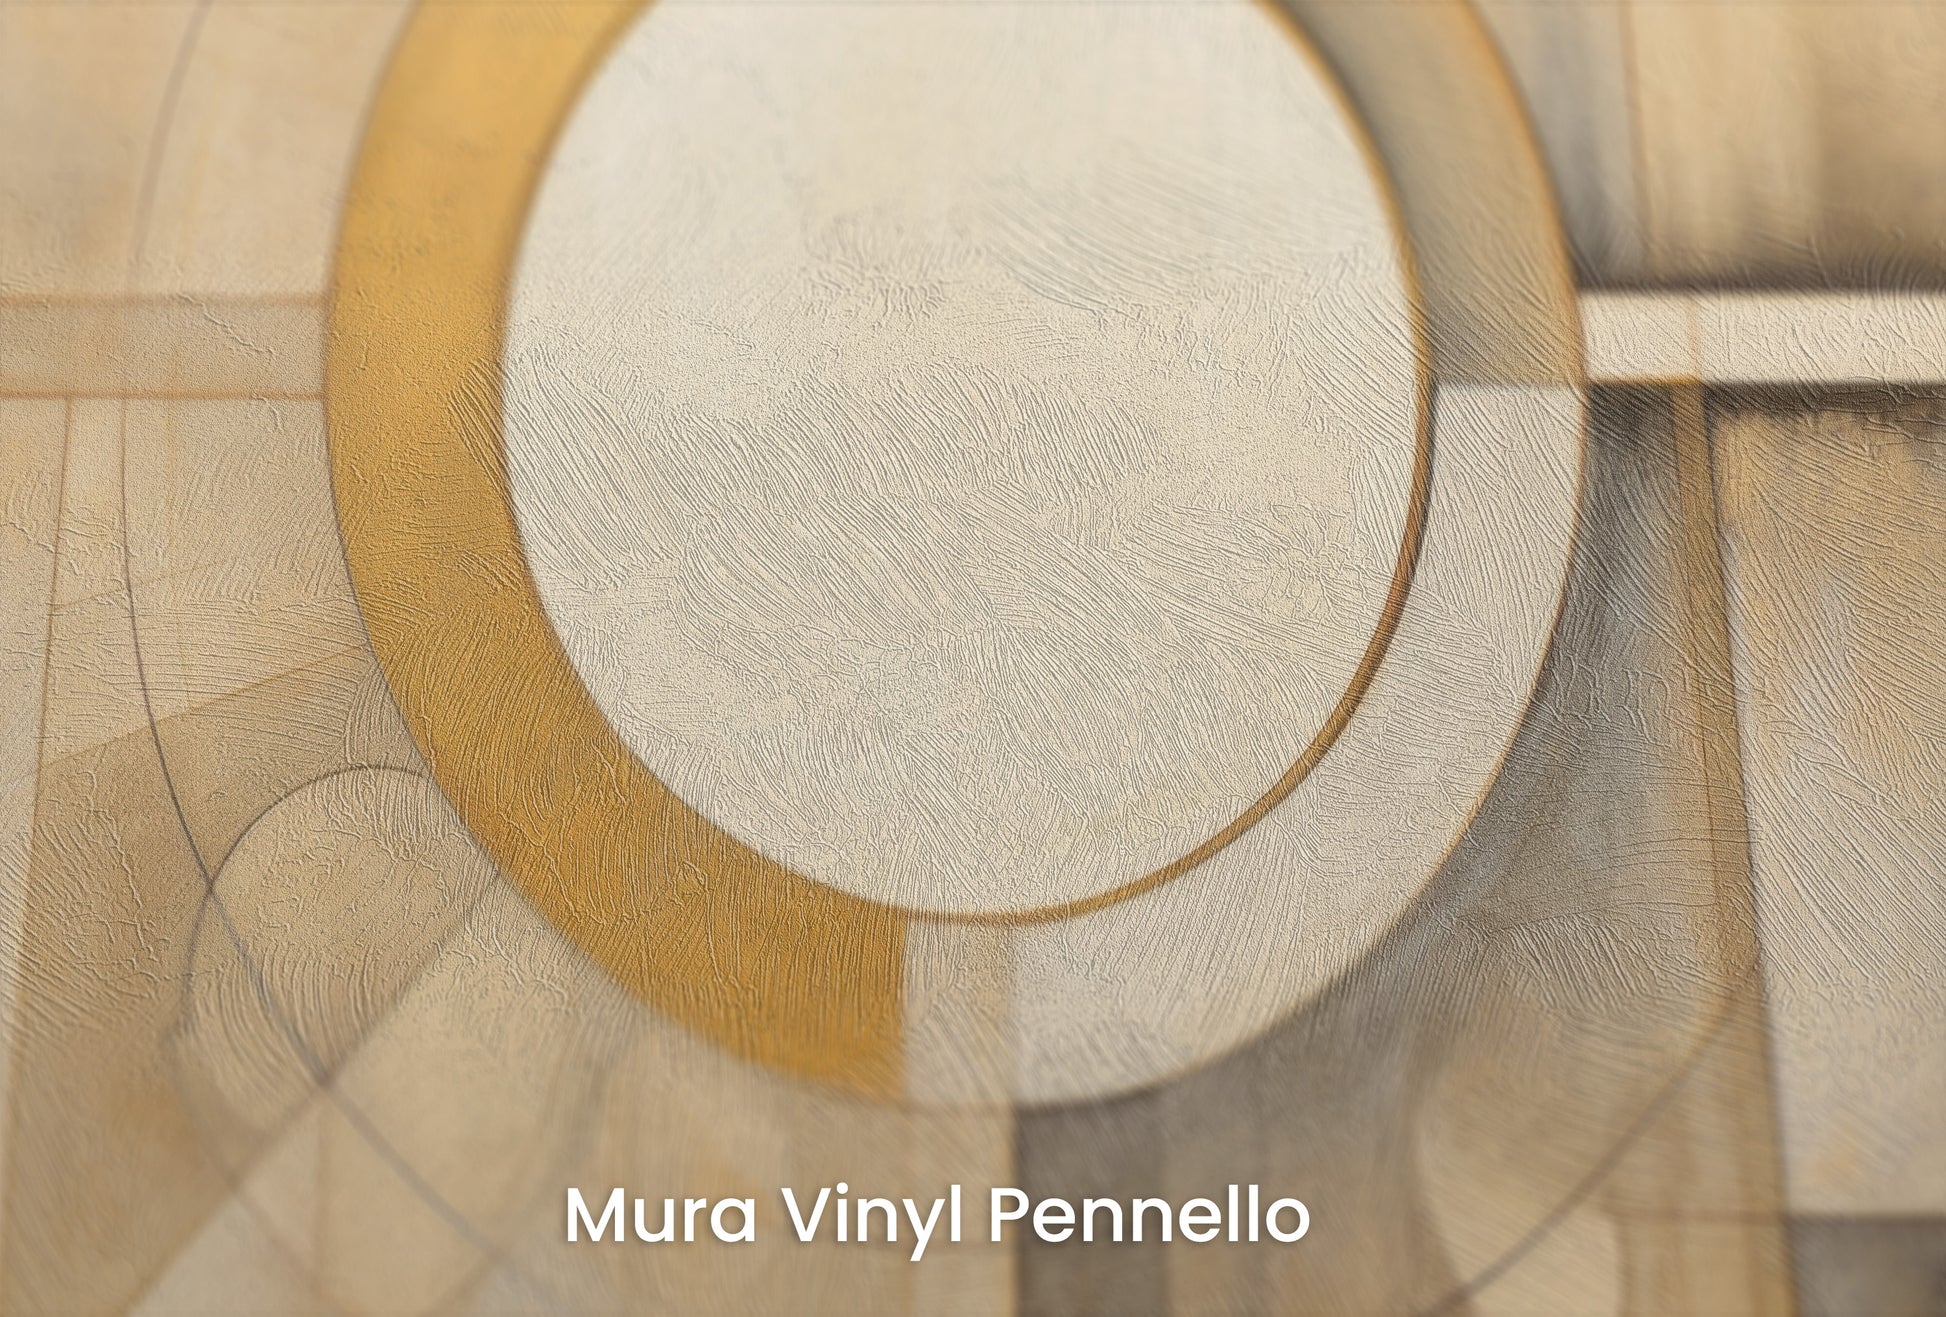 Zbliżenie na artystyczną fototapetę o nazwie CIRCULAR SYMMETRY IN GOLD AND CREAM na podłożu Mura Vinyl Pennello - faktura pociągnięć pędzla malarskiego.